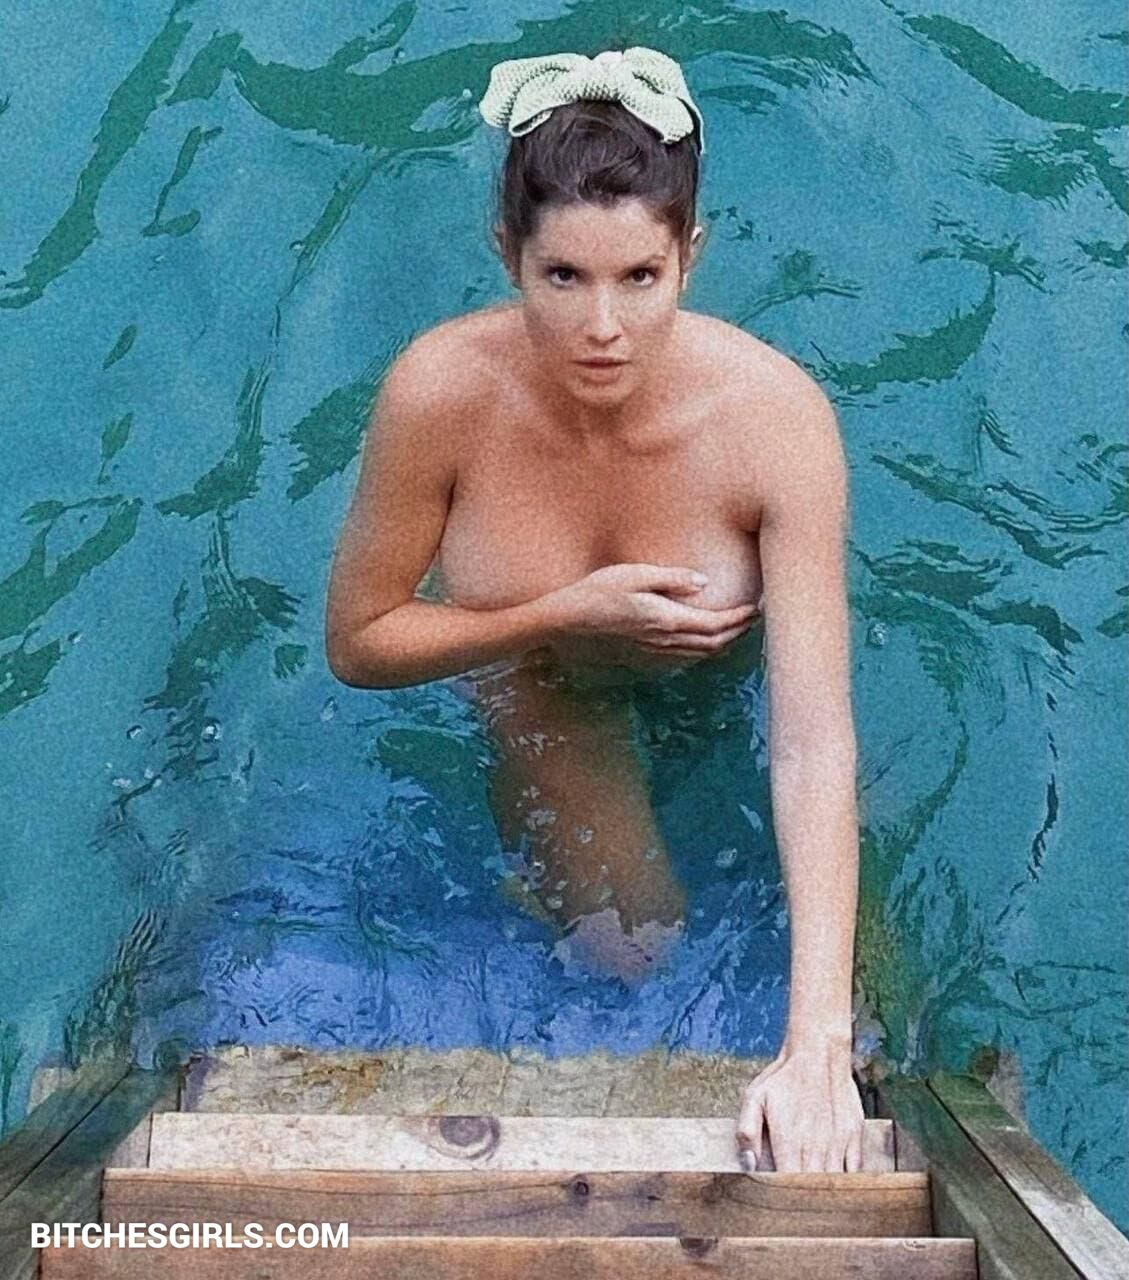 Amanda cerny nudes leaked